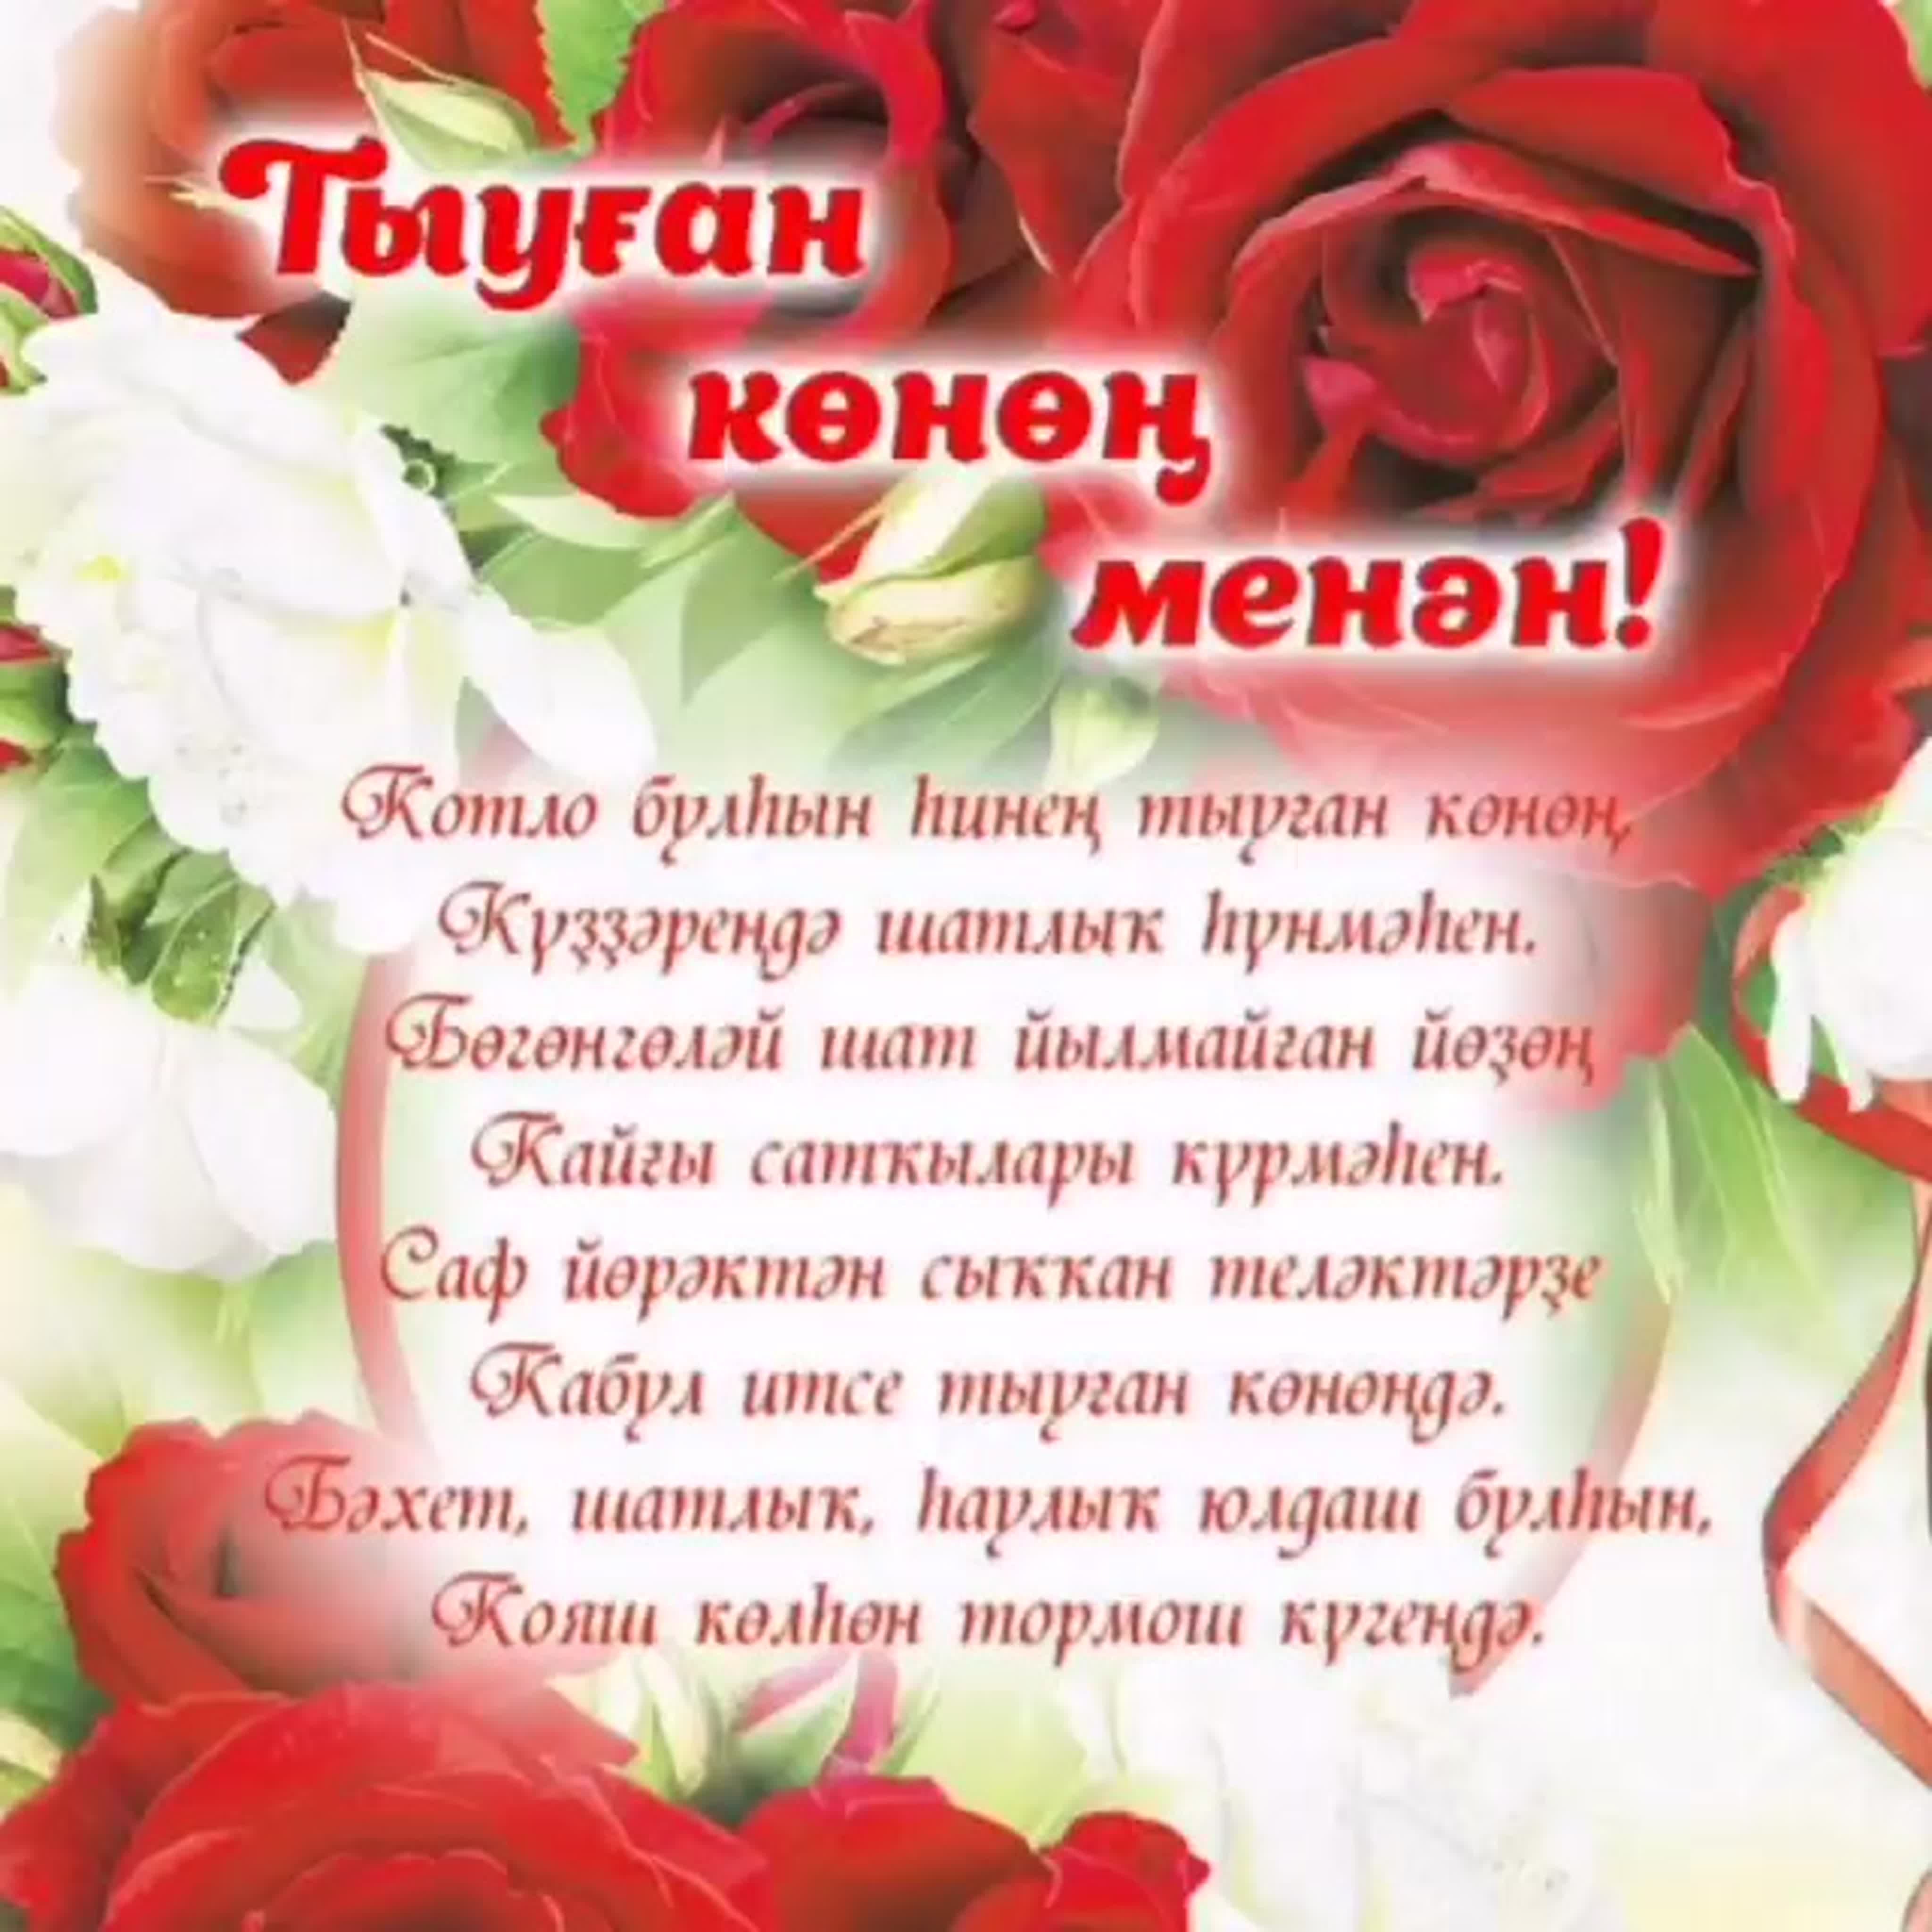 Поздравления на карачаевском языке. Поздравления на башкирском языке. Поздравления с днём рождения на башкирском языке. Поздравление на татарском языке. Поздравления с днём рождения женщине на башкирском языке.